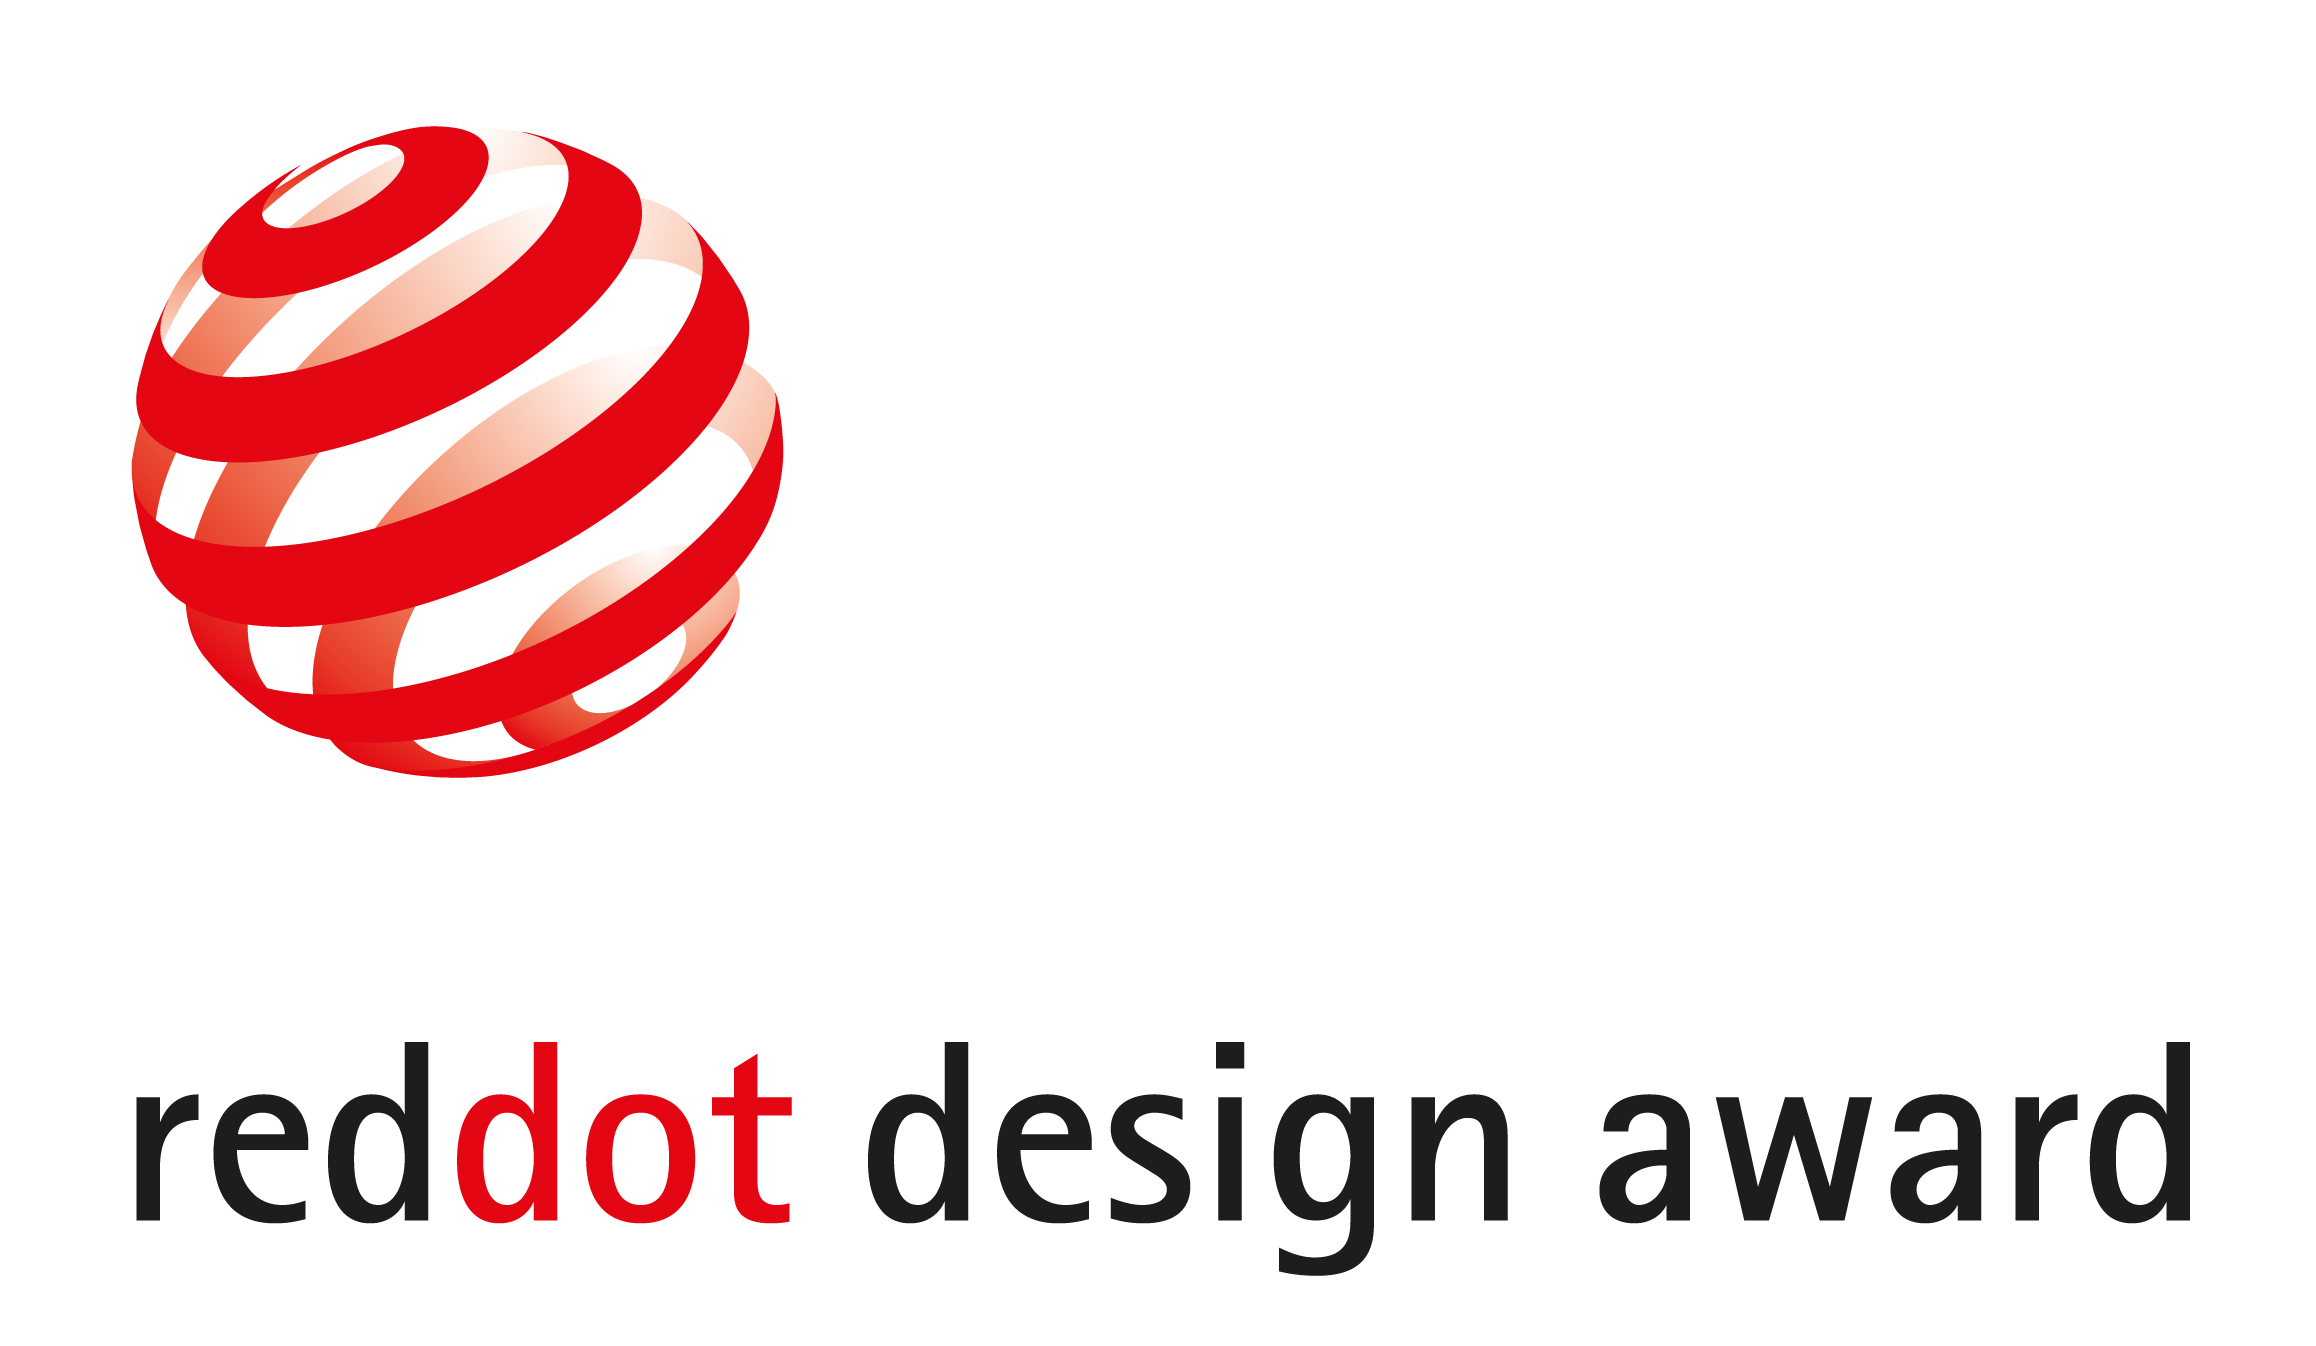 Red Design Award to dizmo - Design - blog